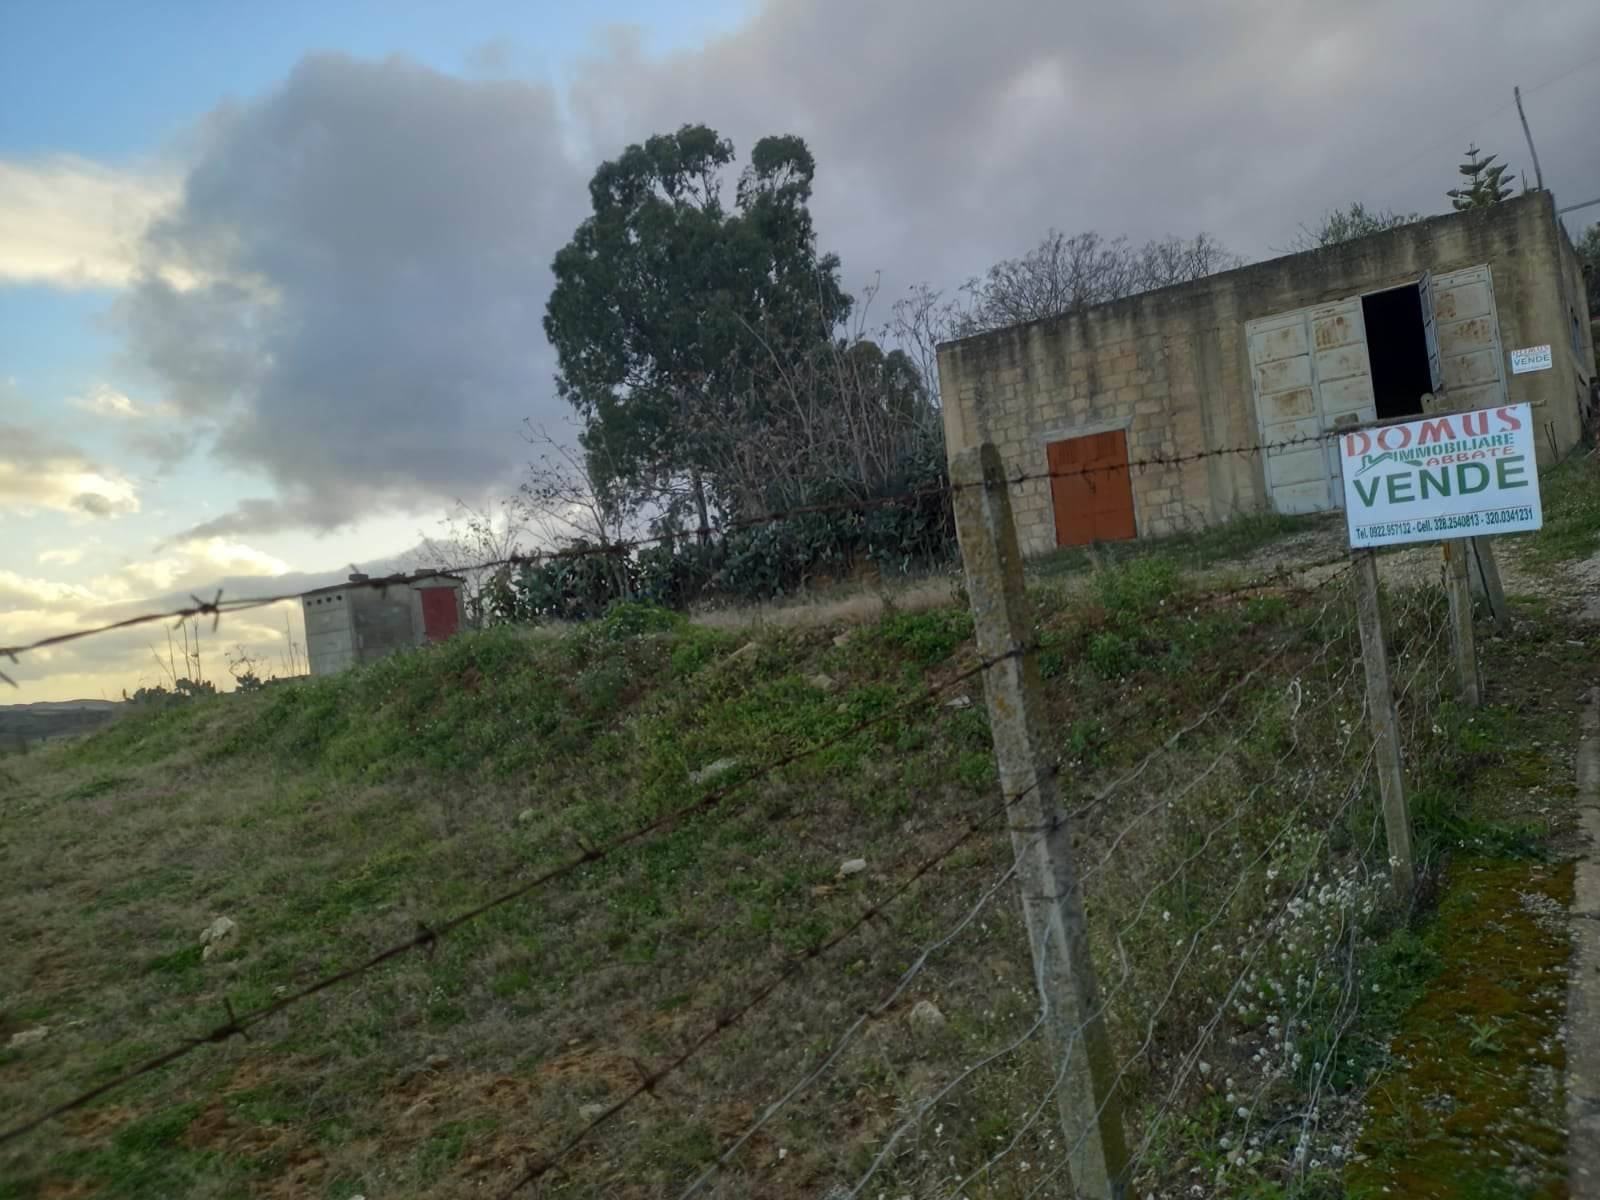 Terreno Agricolo in vendita a Camastra, 9999 locali, prezzo € 60.000 | PortaleAgenzieImmobiliari.it